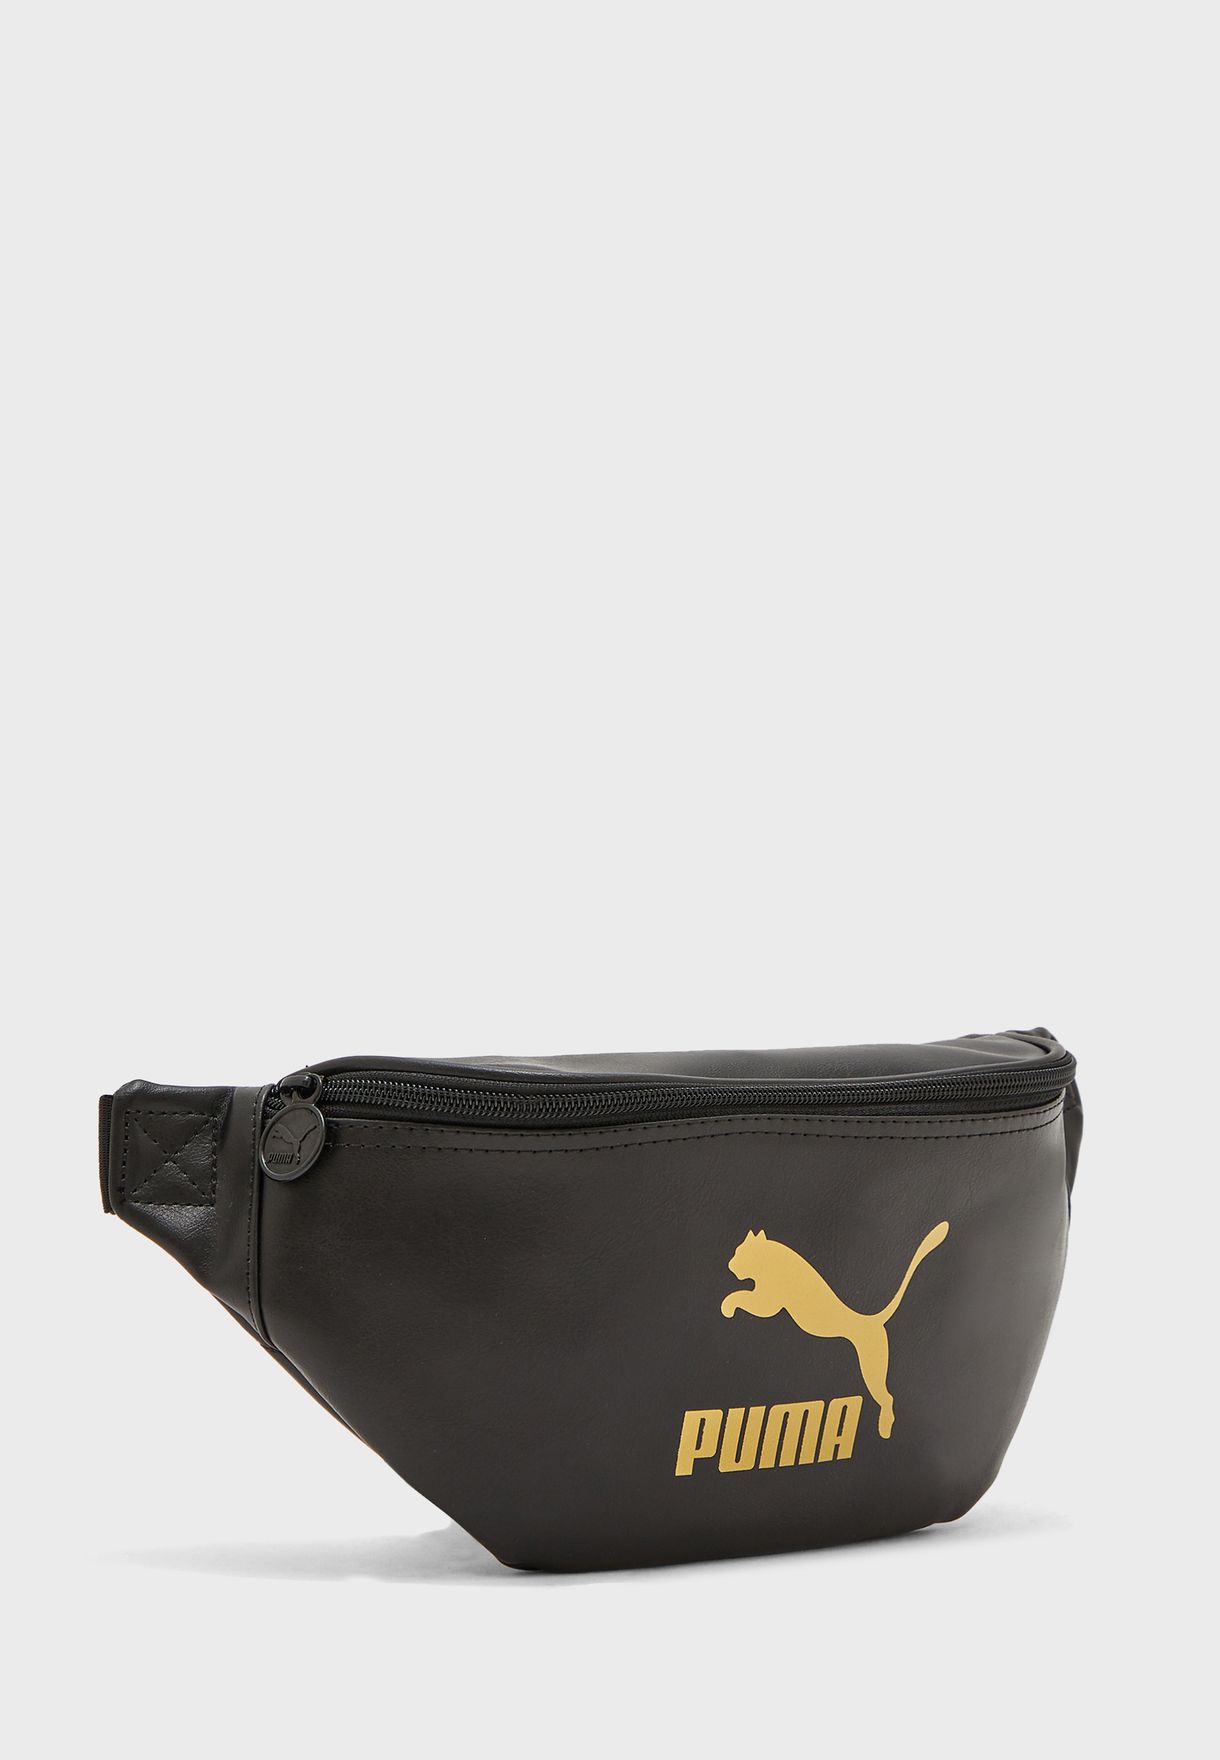 waist bag puma original